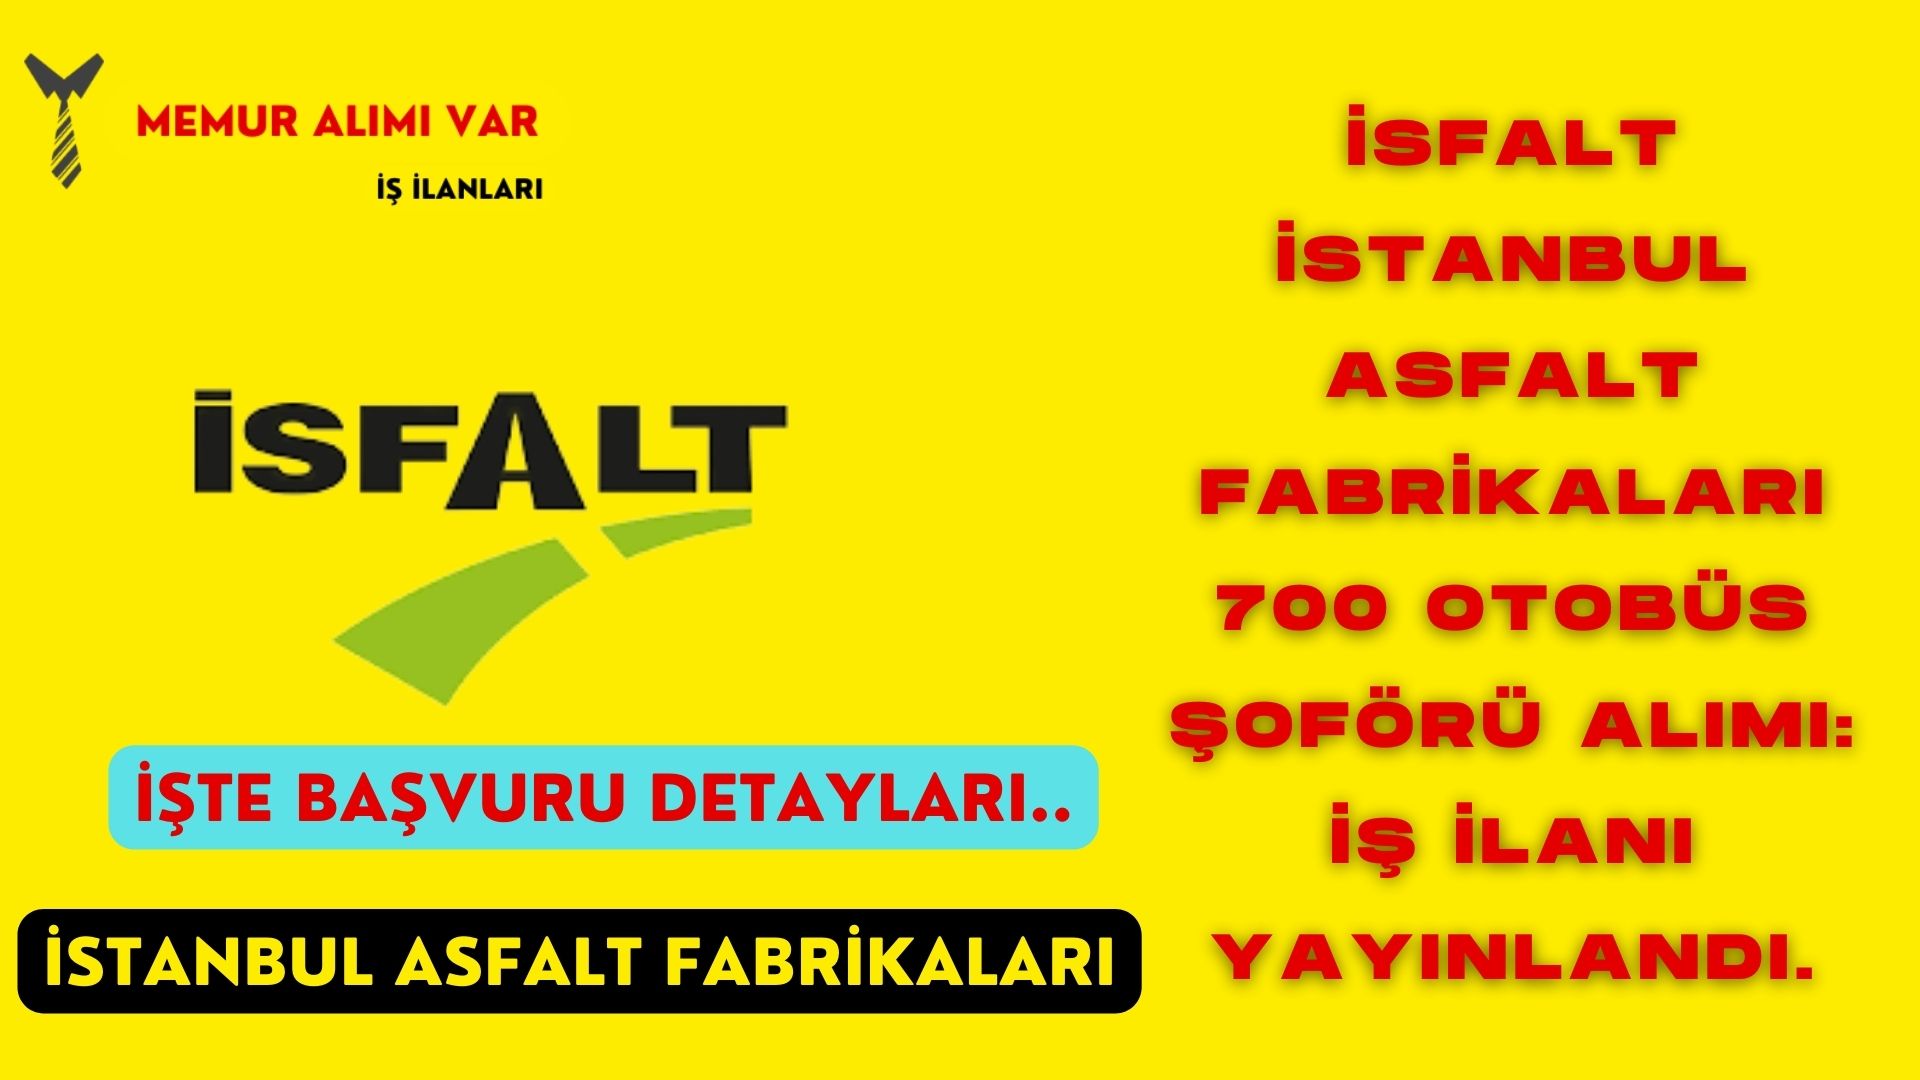 İSFALT İstanbul Asfalt Fabrikaları 700 Otobüs Şoförü Alımı: İş İlanı Yayınlandı